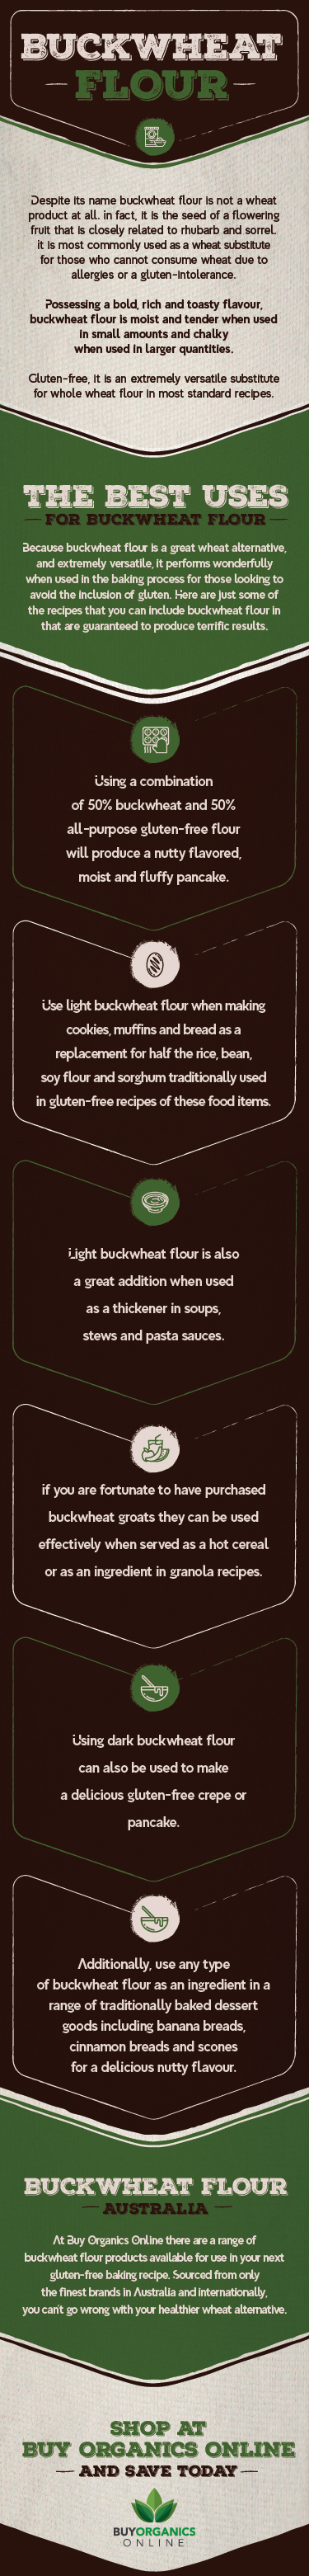 buckwheat-infographic